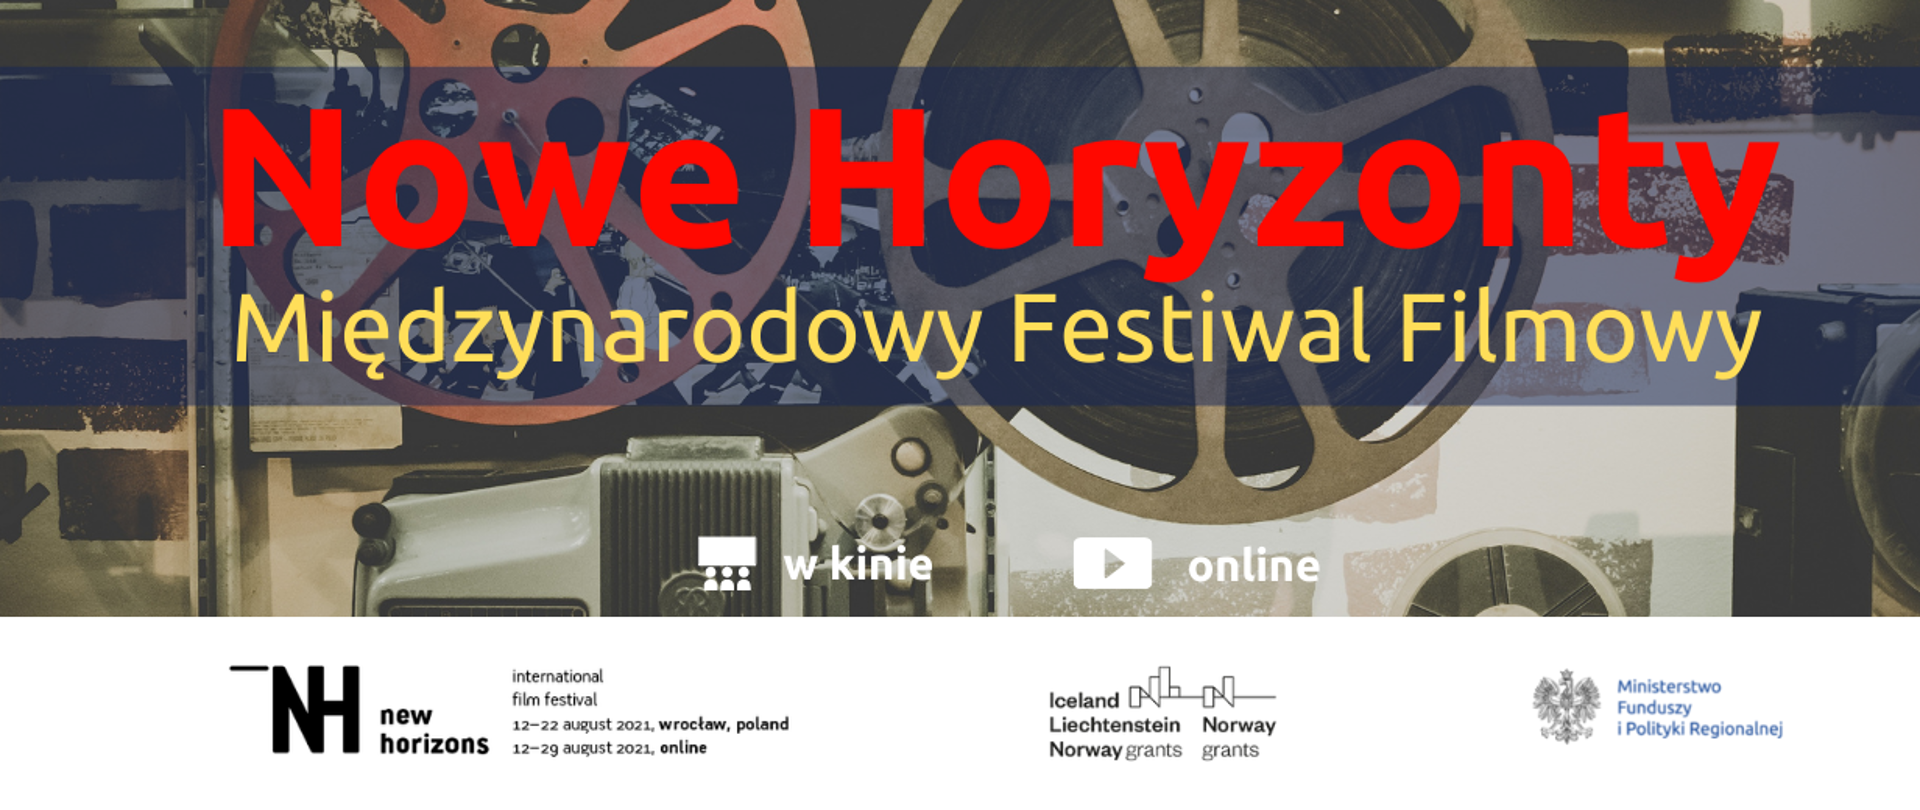 Międzynarodowy Festiwal Nowe Horyzonty